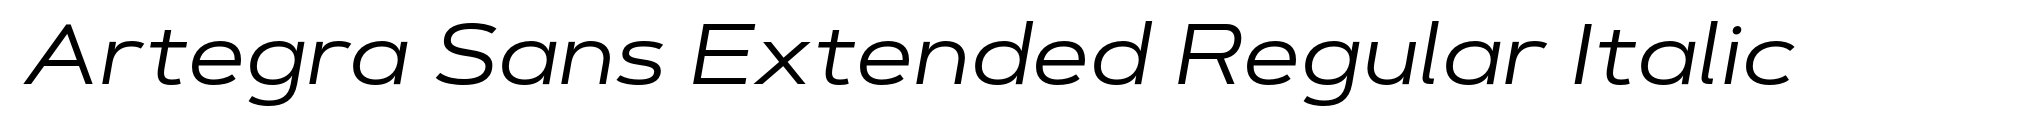 Artegra Sans Extended Regular Italic image